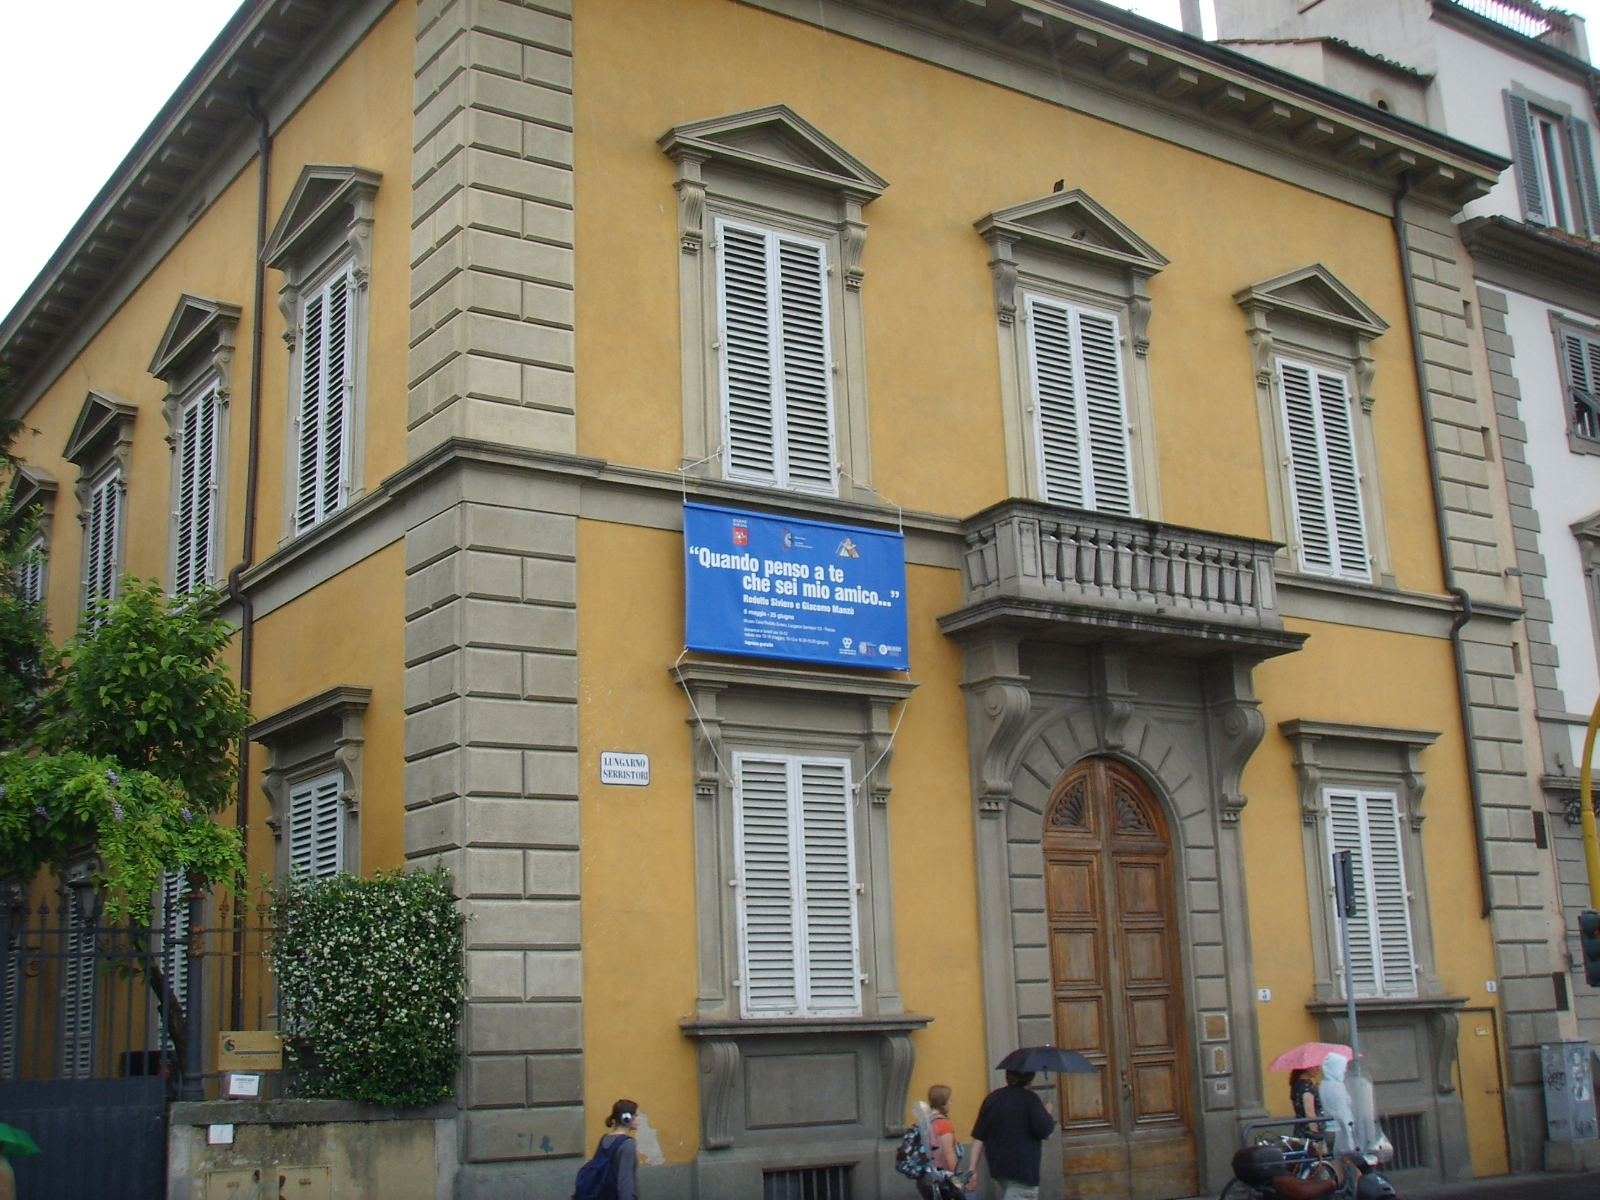 Rodolfo Riviero House Museum